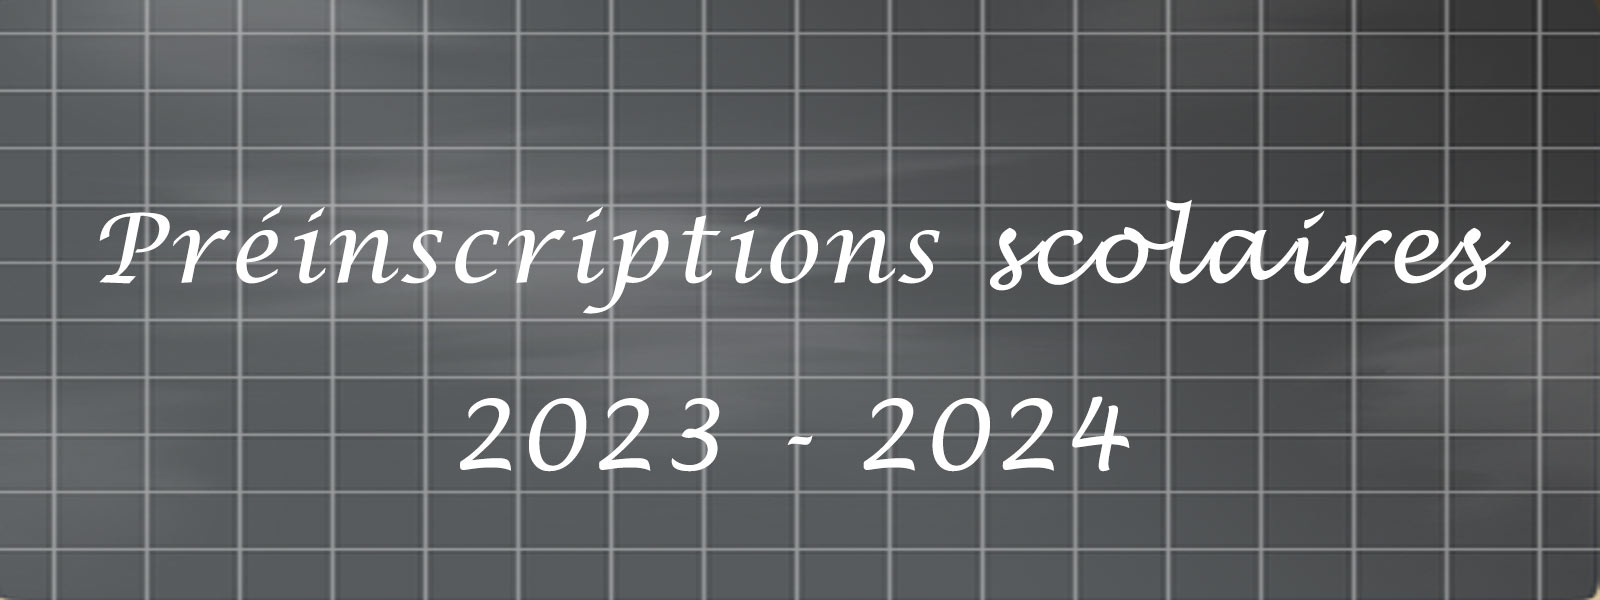 Préinscriptions scolaires 2023-2024